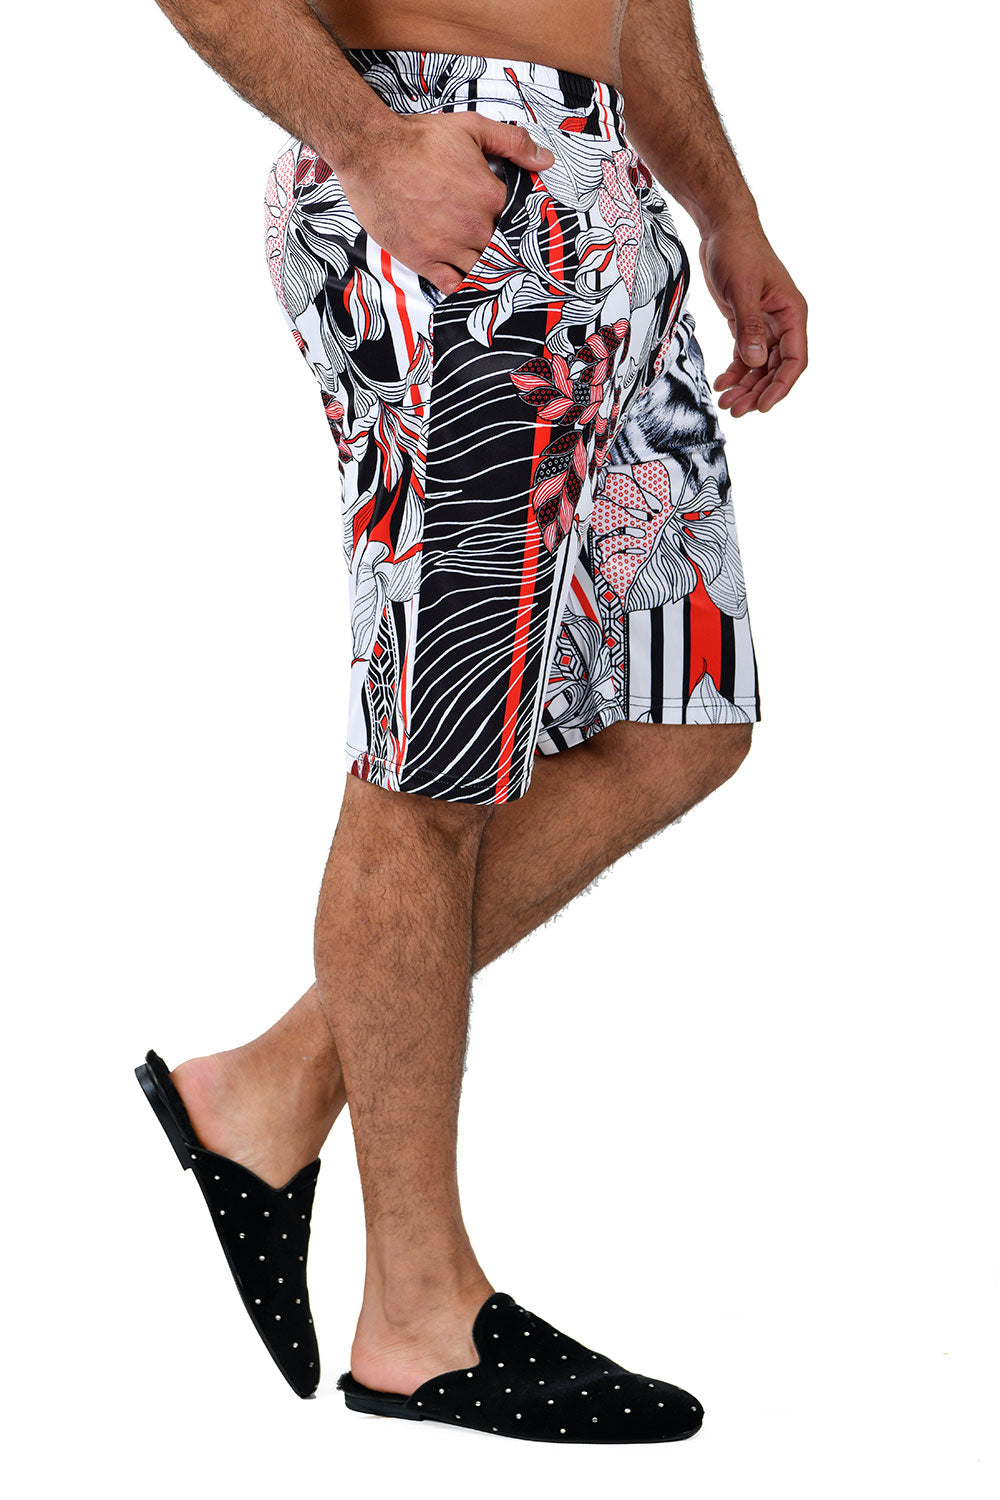 Barabas Men's Striped Floral Tiger Printed Shorts BSP9004